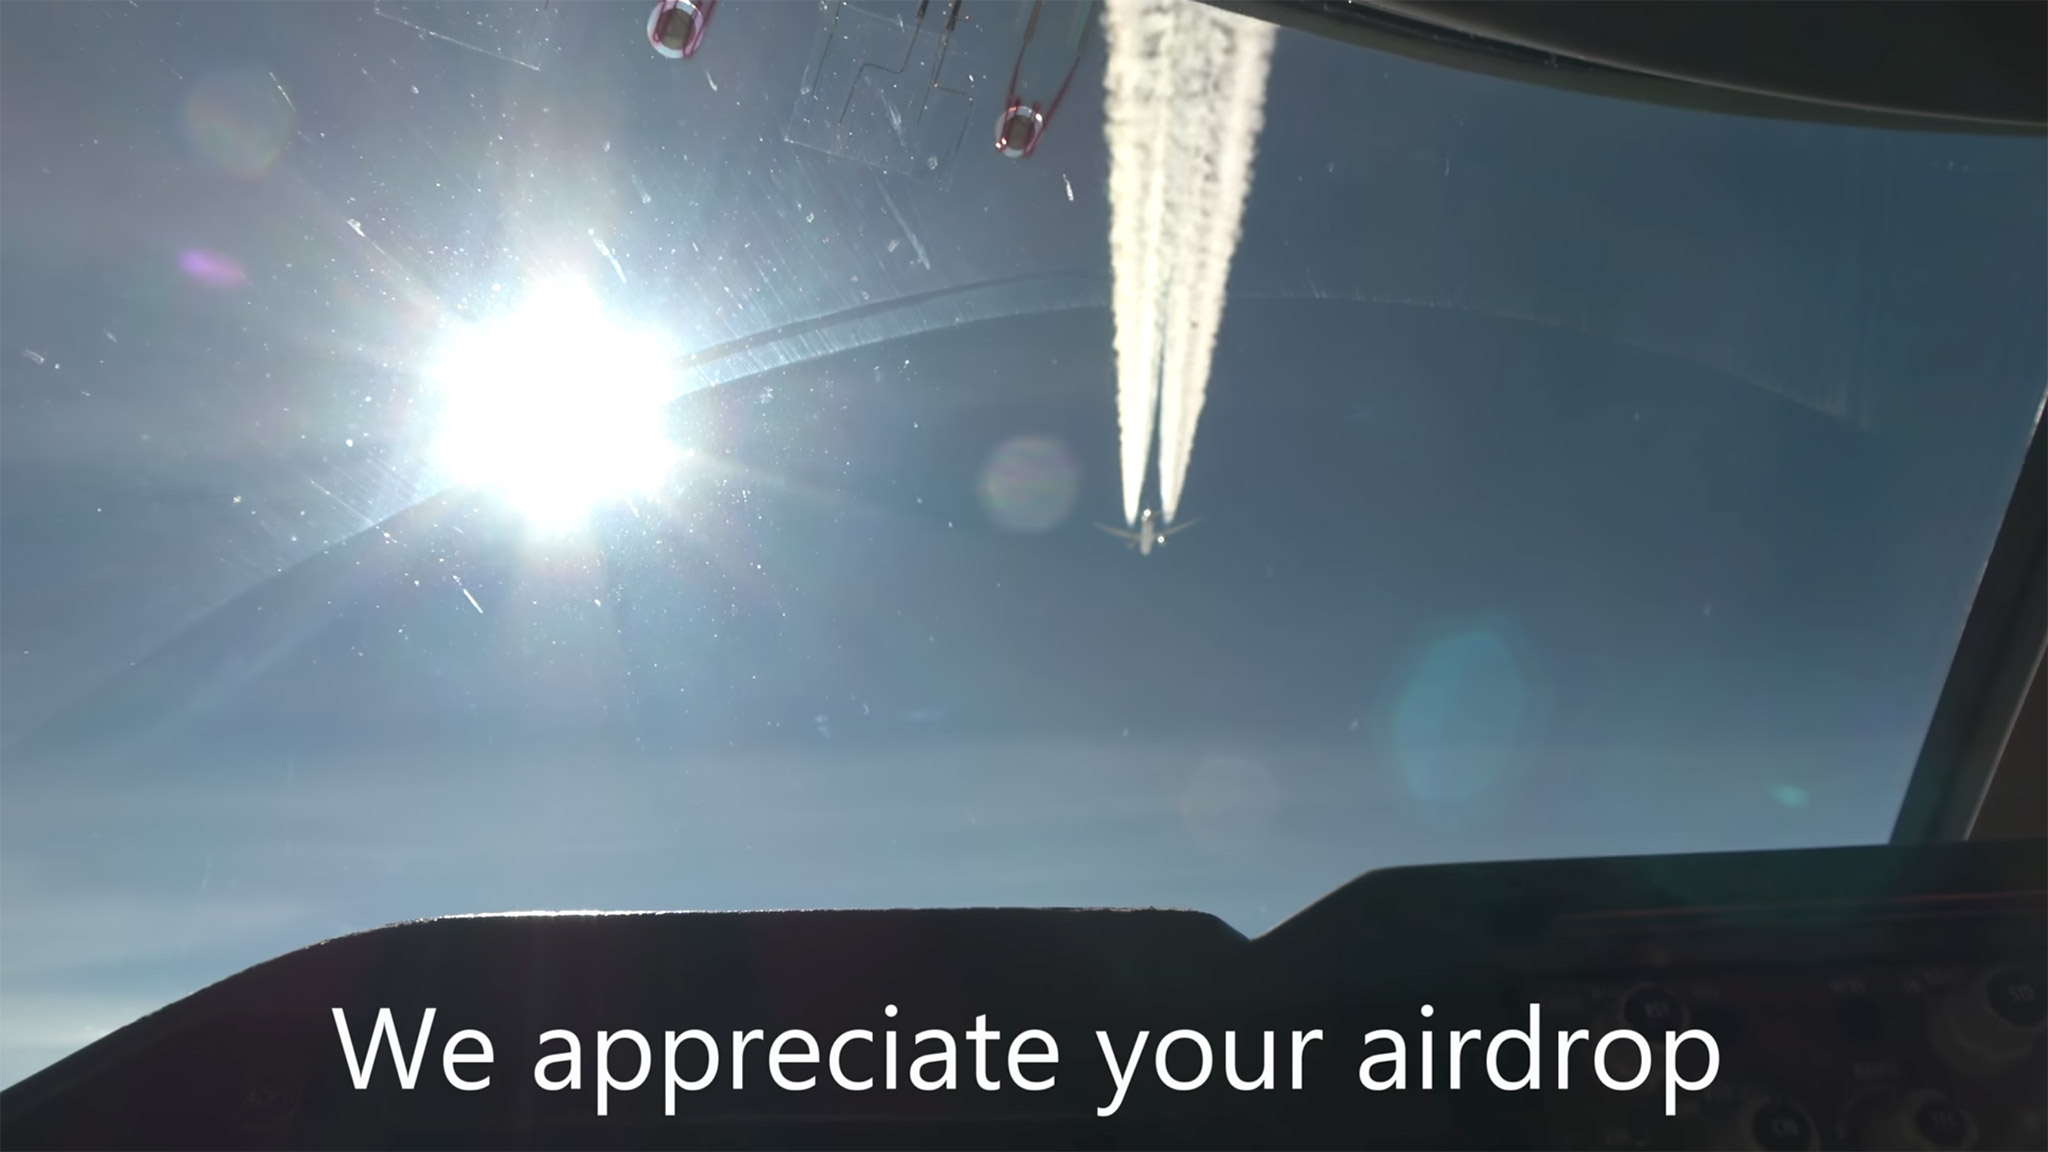 Airdrop ở độ cao 11,000m giữa hai iPhone, Cập nhật: Video này có thể là fake